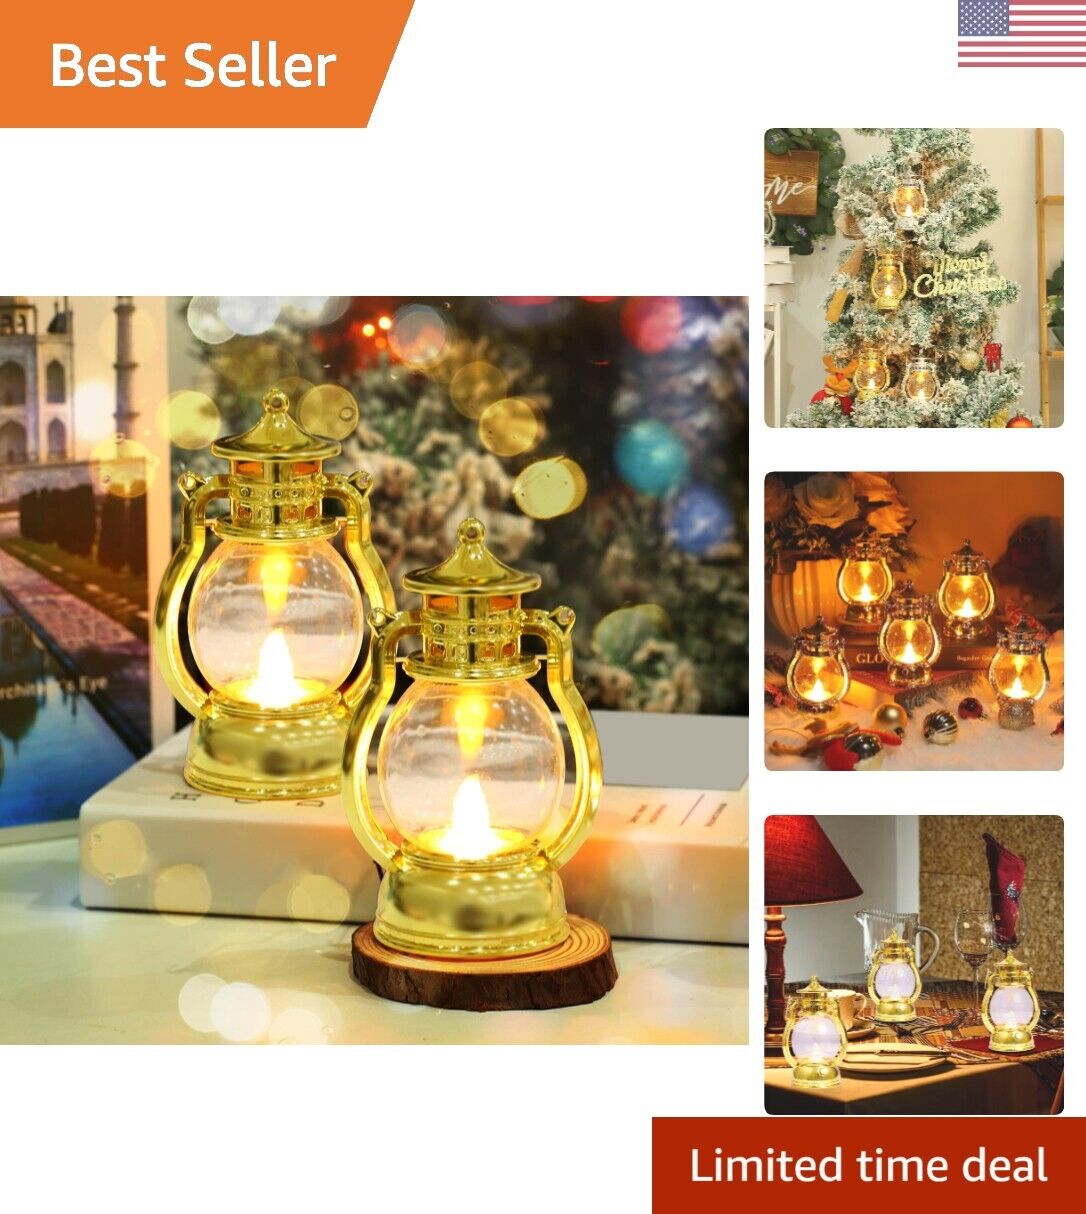 Christmas Decorative Lanterns - 2 Pack - Flickering LED Light - Vintage Design